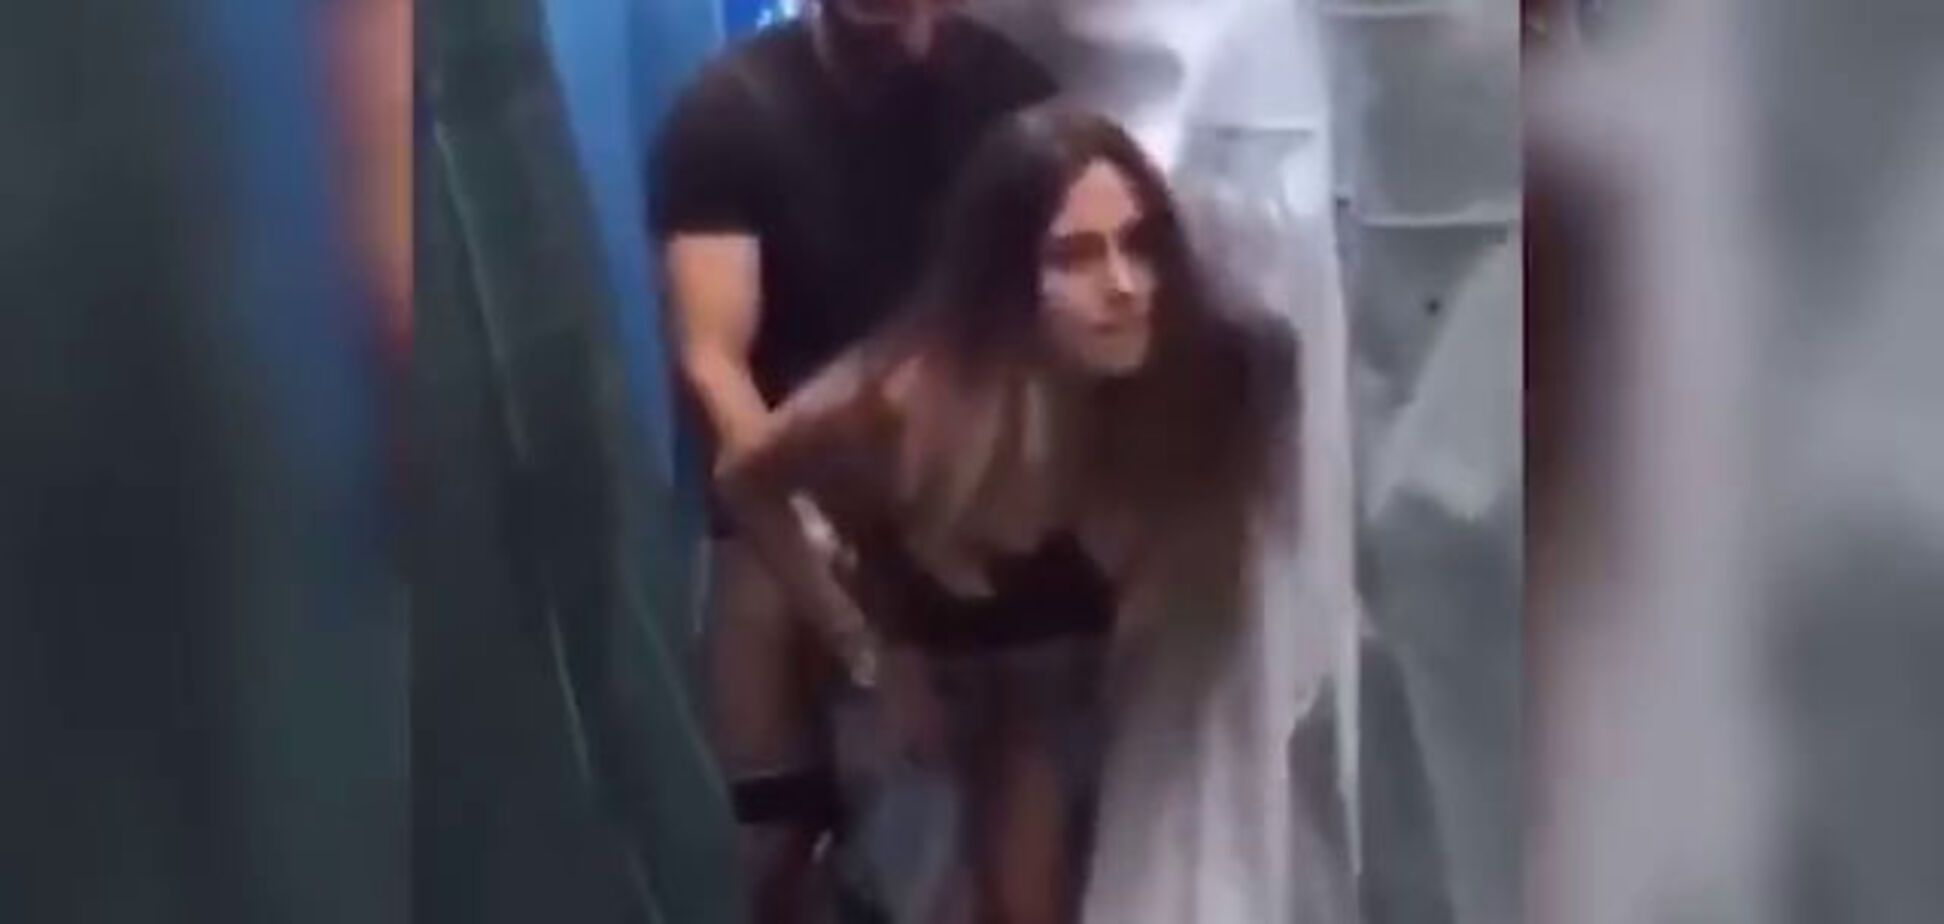 ЧМ-2018: аргентинский болельщик занялся сексом с россиянкой на трибуне - видео 18+